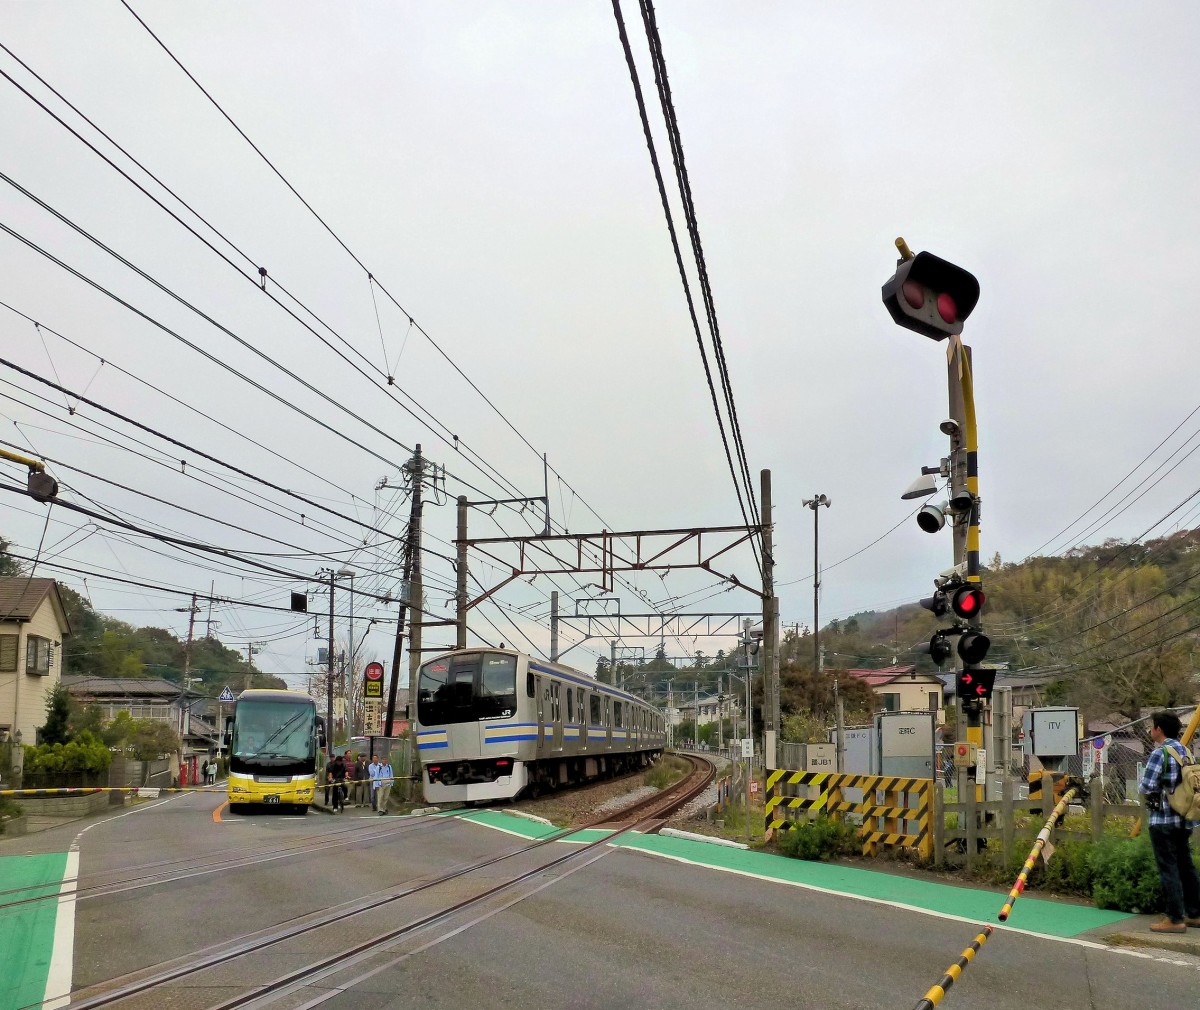 Serie 217 Eilzüge: bei Kamakura südöstlich von Tokyo. Im Bild Zusatzzug Nr.11 (kuha216-1011), welcher die letzten 4 Wagen eines 15-Wagenzugs bildet. Gut zu sehen die beiden leuchtenden Pfeile an der Schranke, die anzeigen, dass sich Züge von beiden Seiten nähern. 30.November 2011.  YOKOSUKA-LINIE 